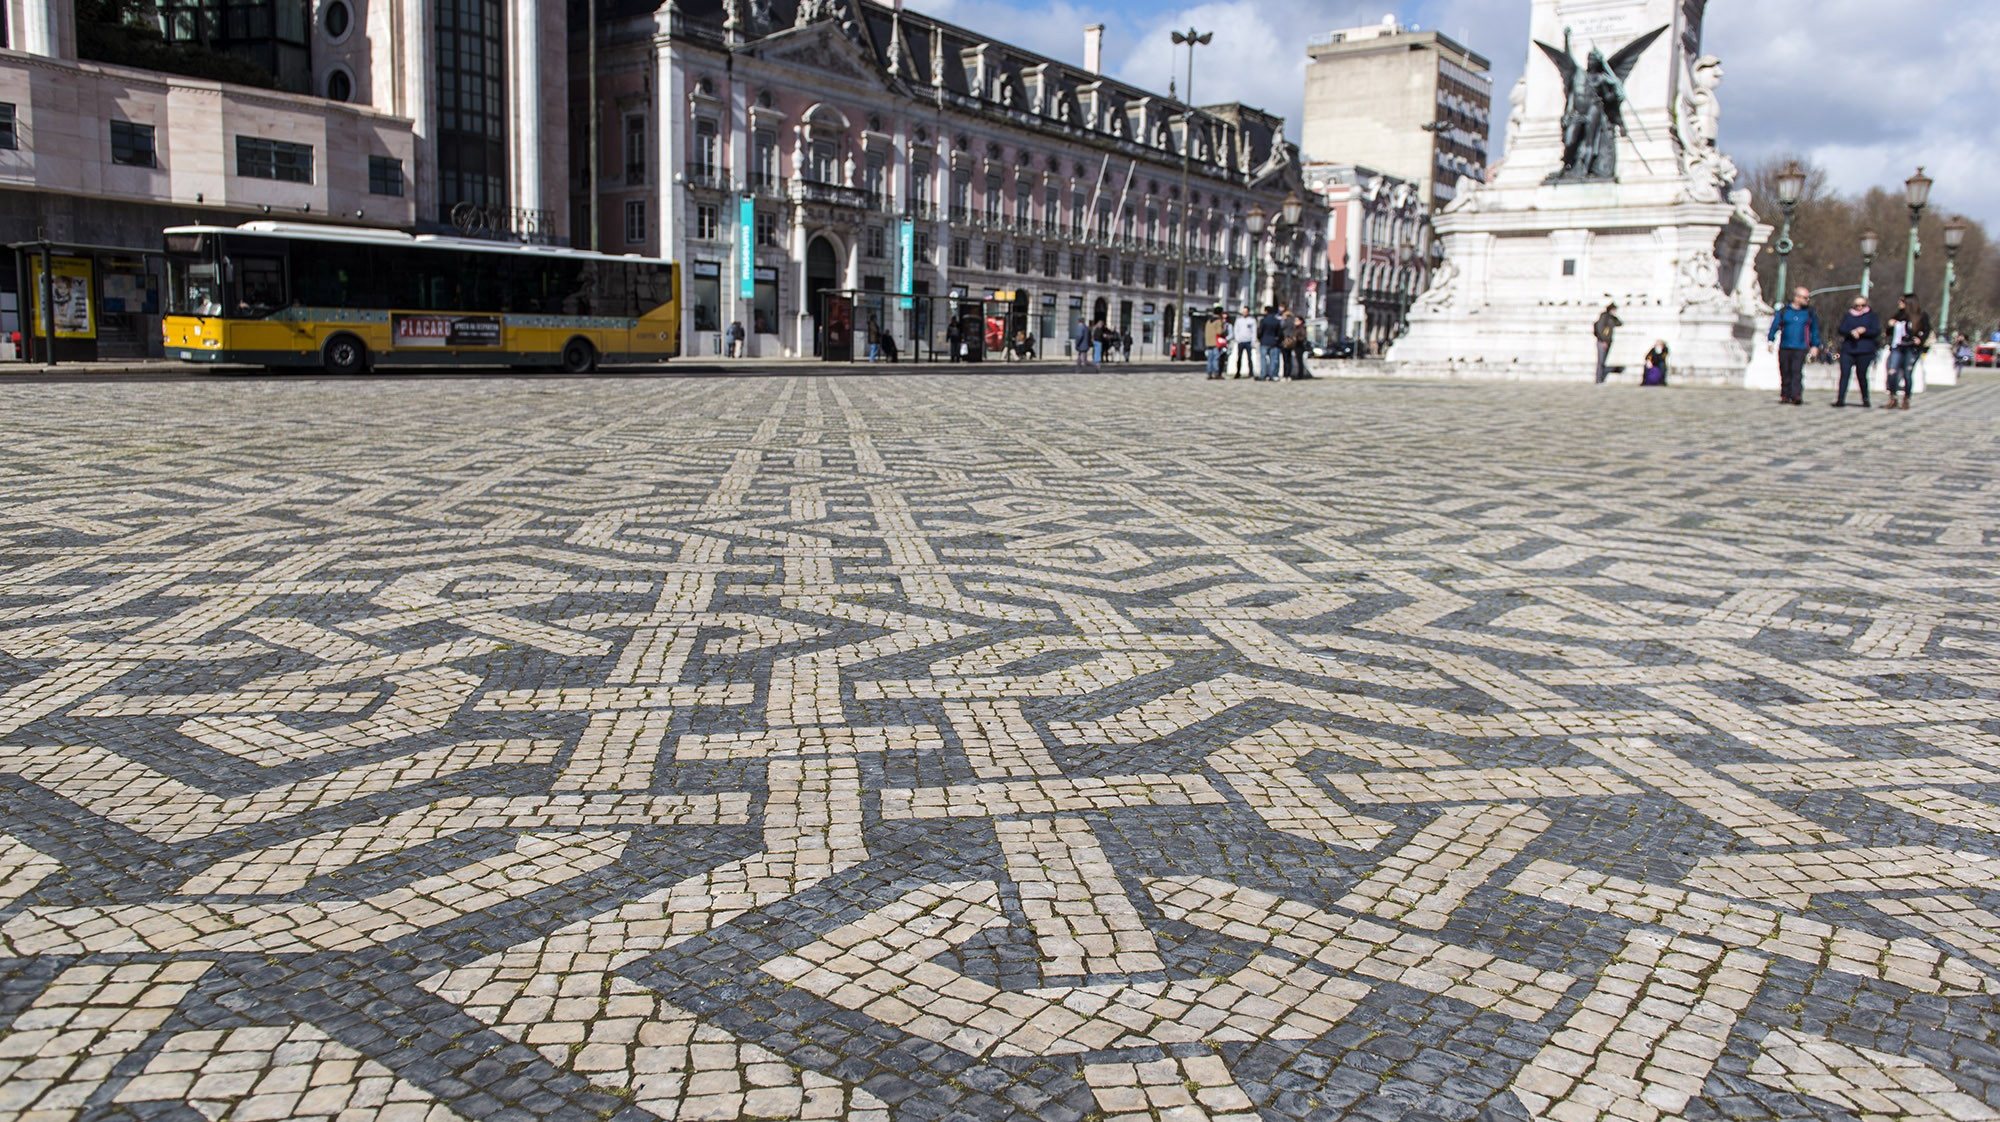 A calçada portuguesa resulta do calcetamento com pedras de formato irregular, geralmente em calcário branco e negro, que podem ser usadas para formar padrões decorativos ou mosaicos pelo contraste entre as pedras de distintas cores